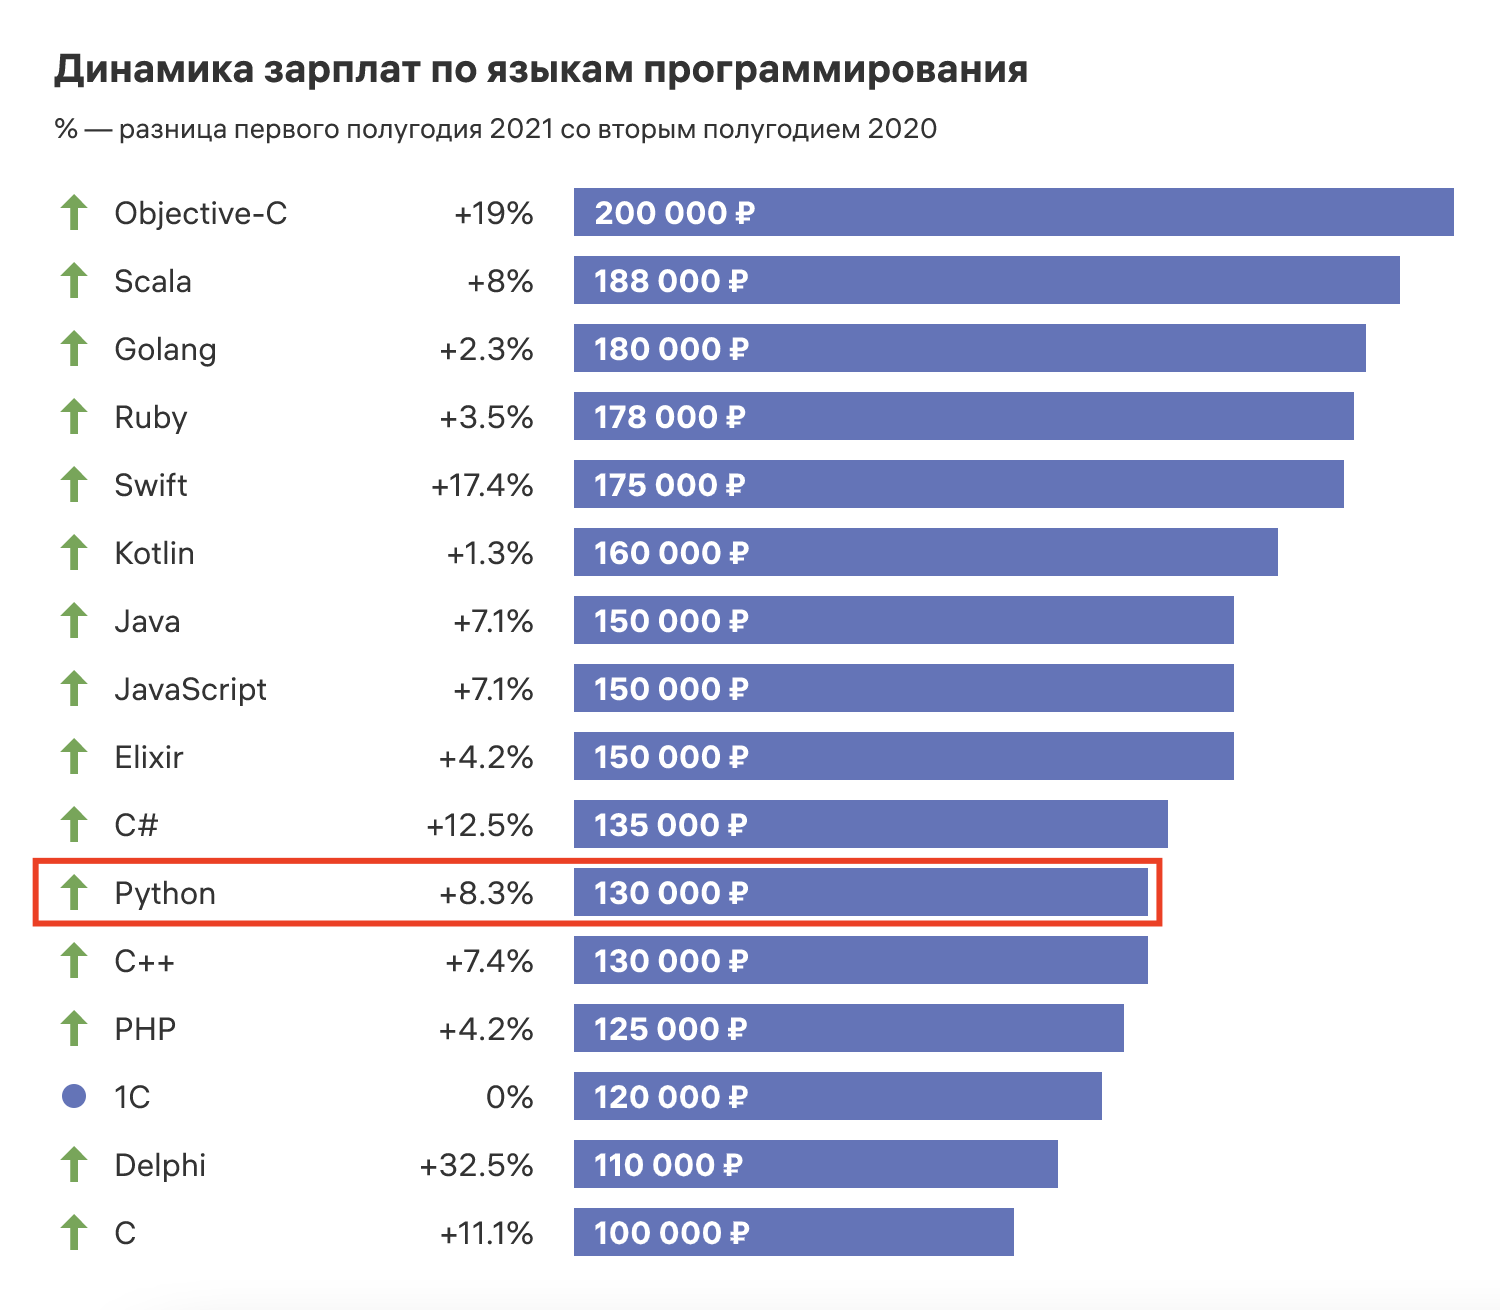 Cредние зарплаты по языкам программирования в России за первое полугодие 2021 года